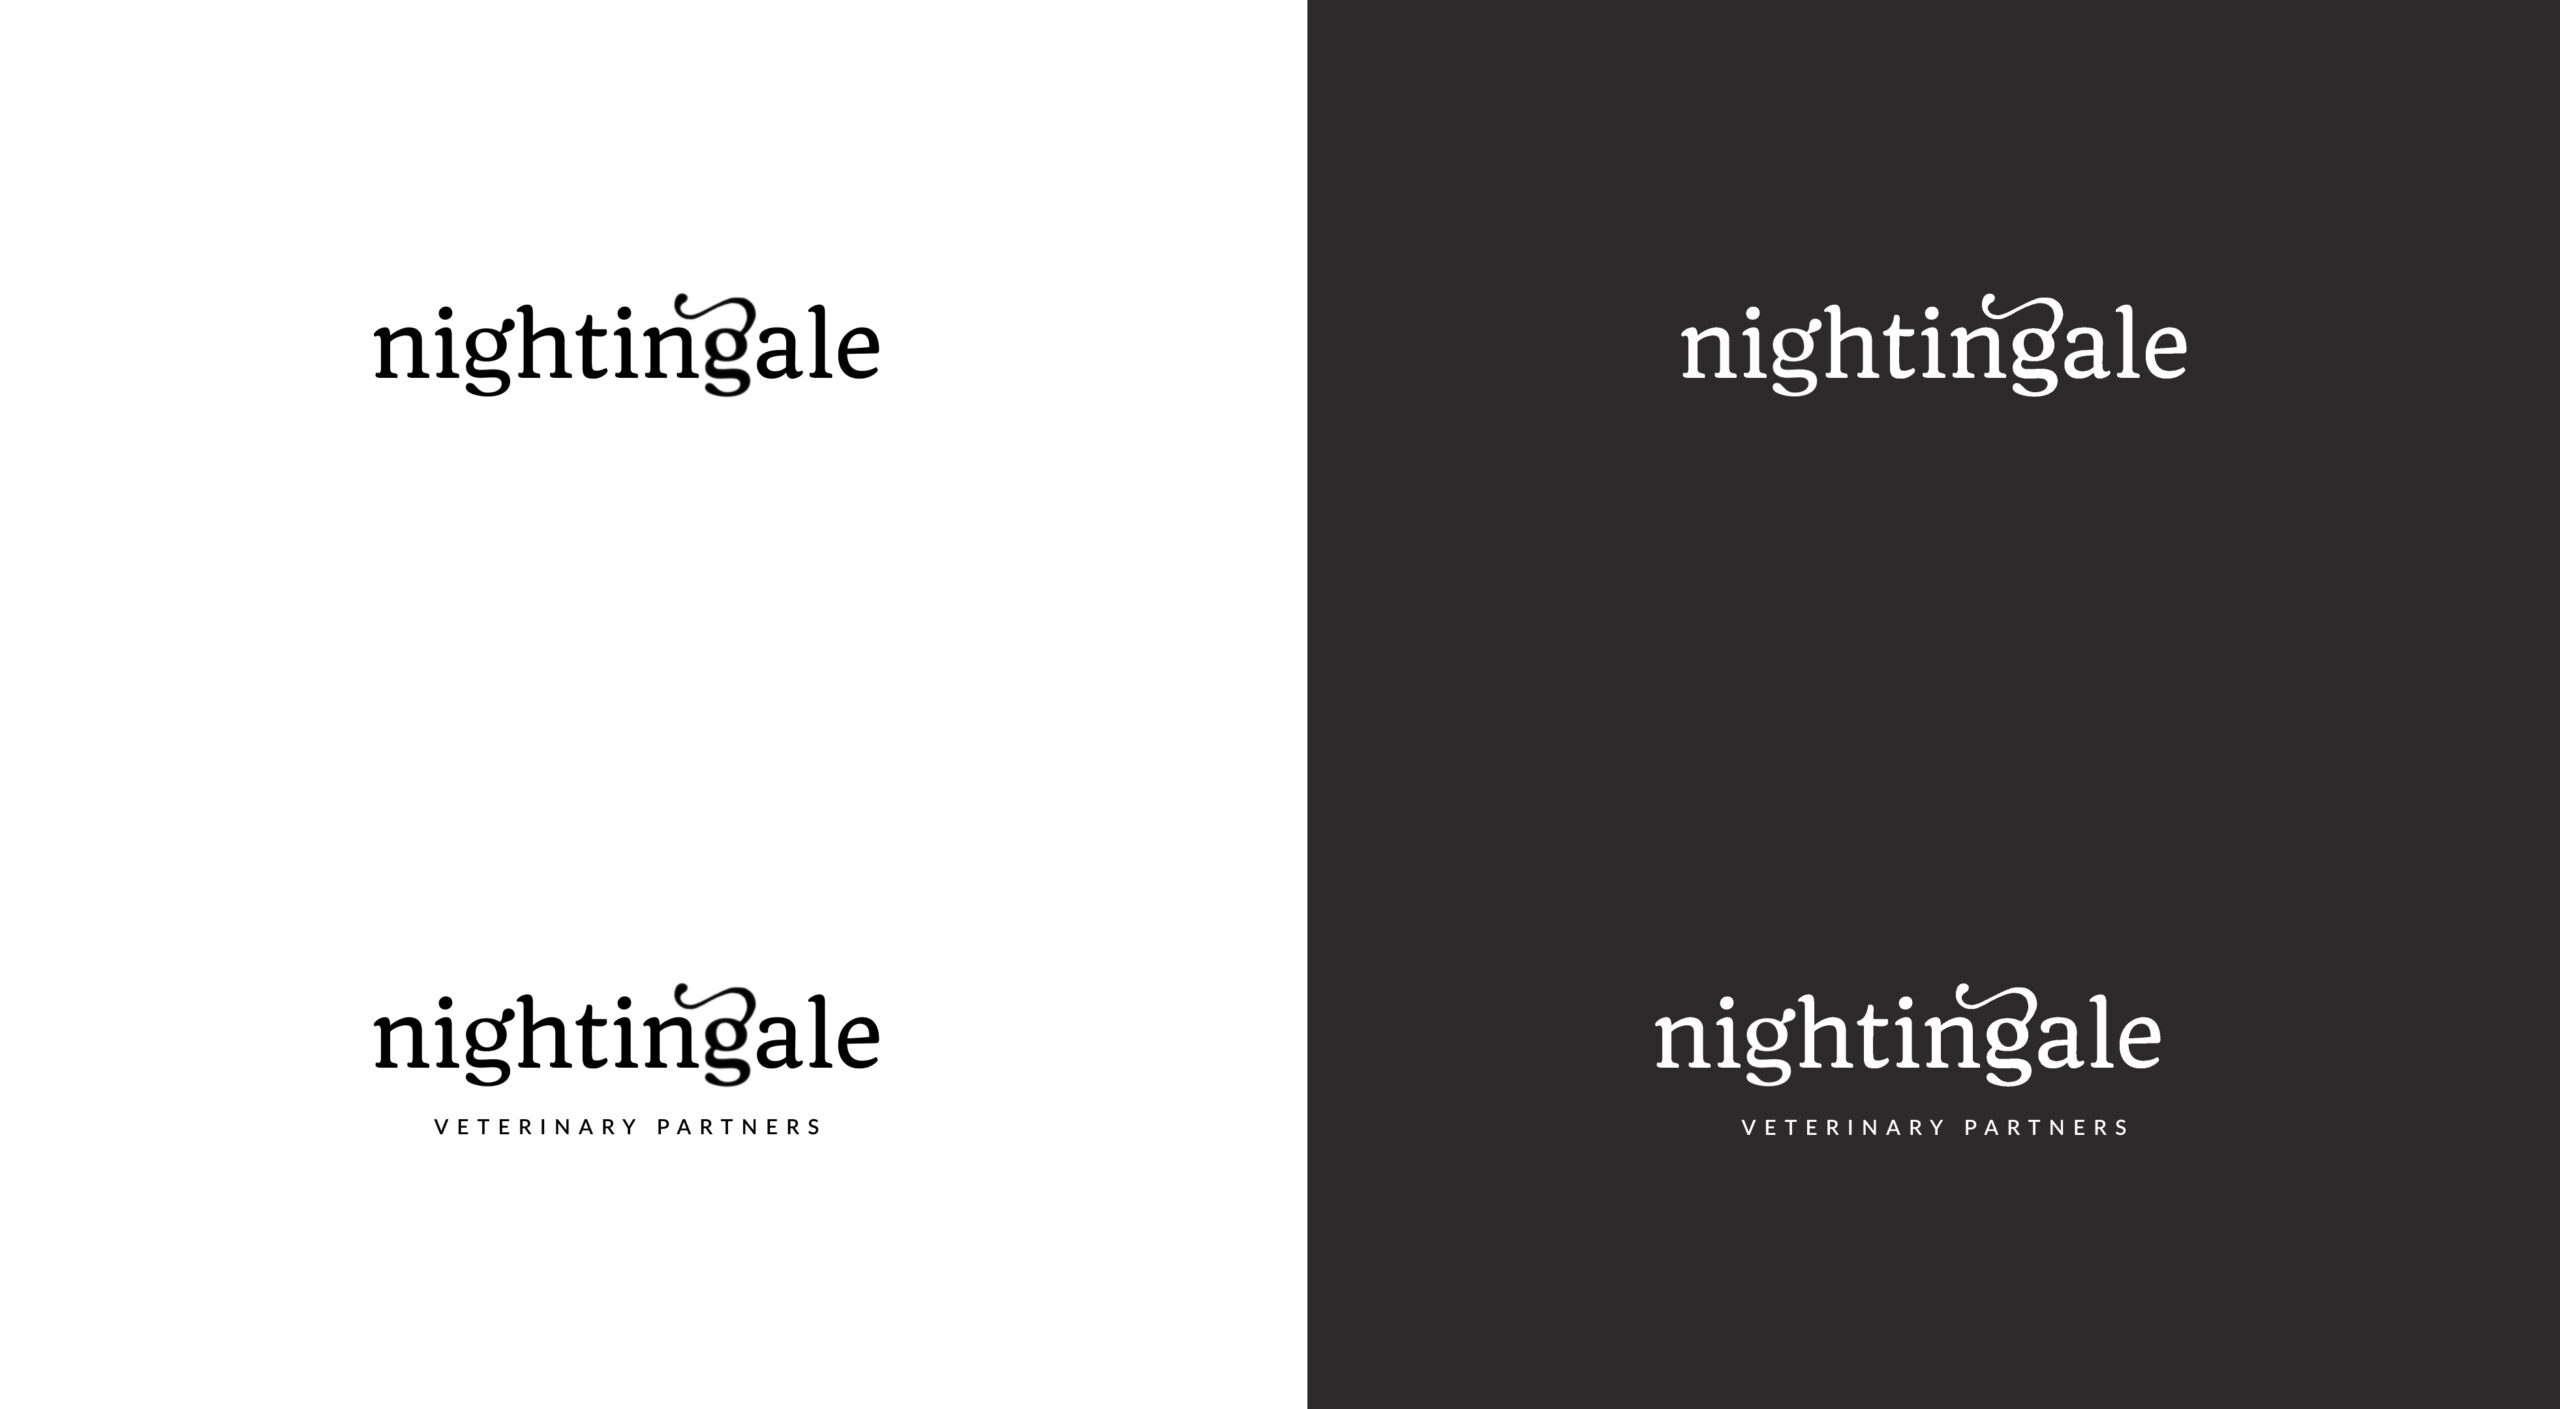 nightingale logos